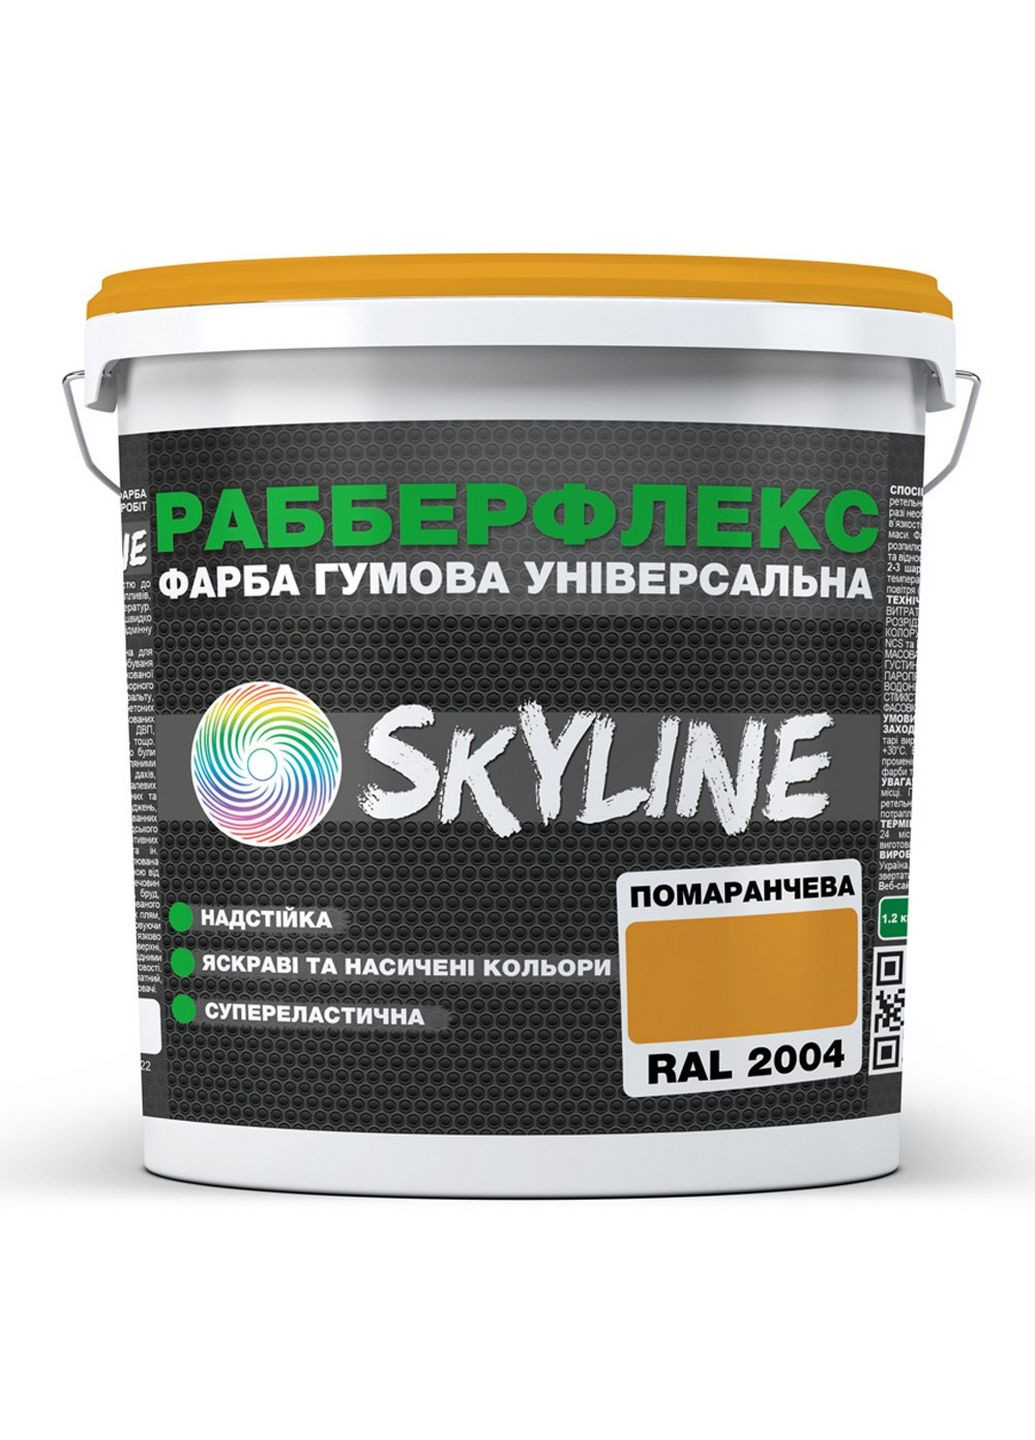 Сверхстойкая краска резиновая суперэластичная «РабберФлекс» 6 кг SkyLine (283326090)